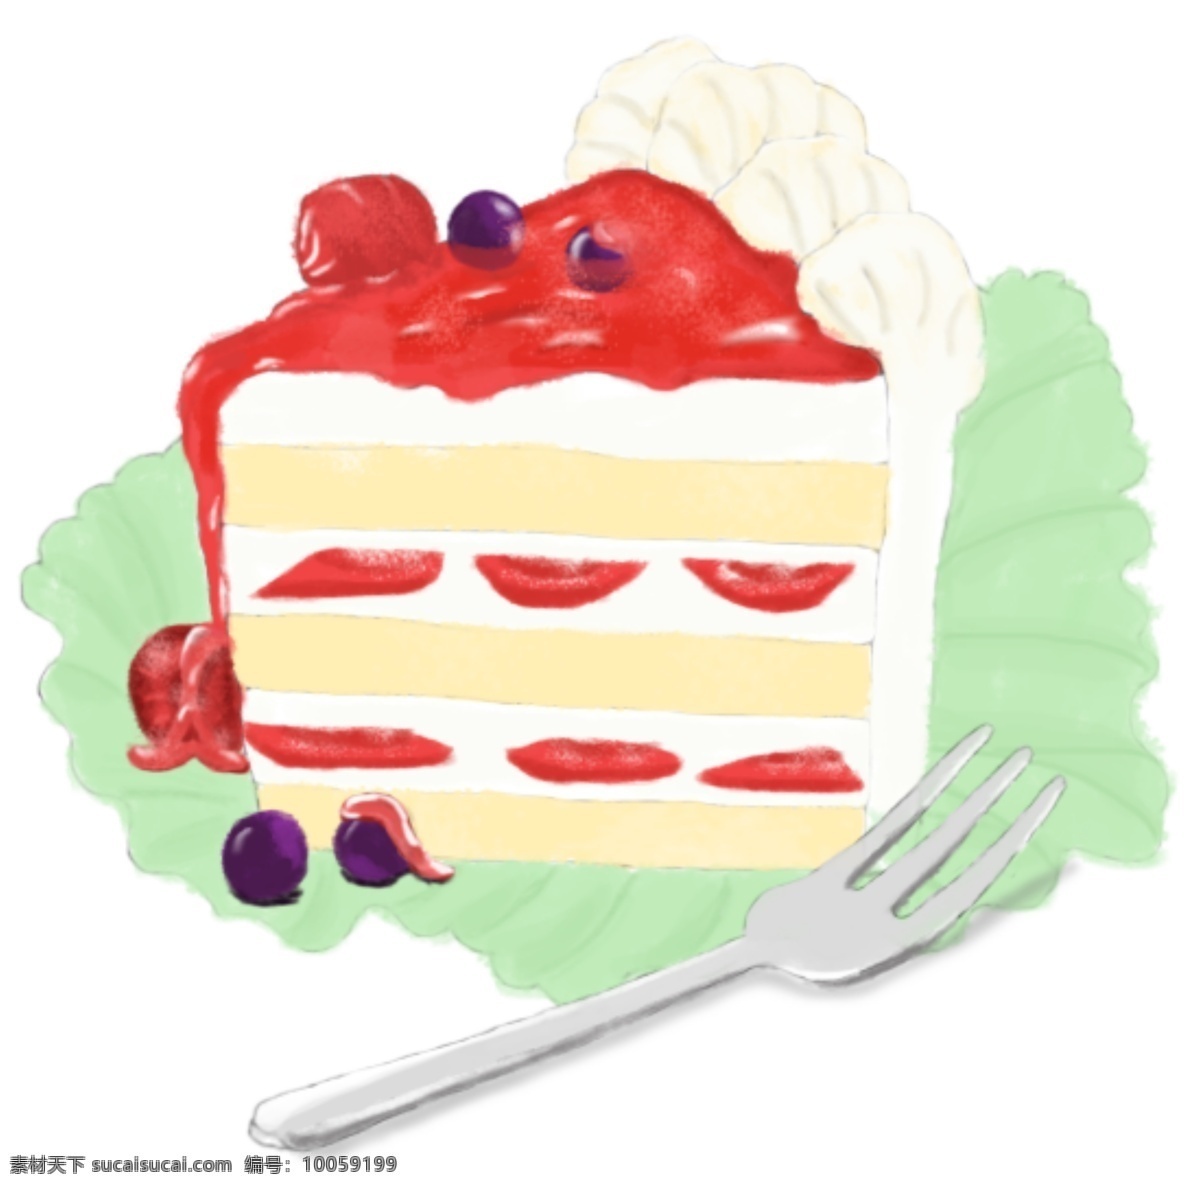 蛋糕 叉子 手绘 卡通 手绘蛋糕 蛋糕叉子 手绘甜点